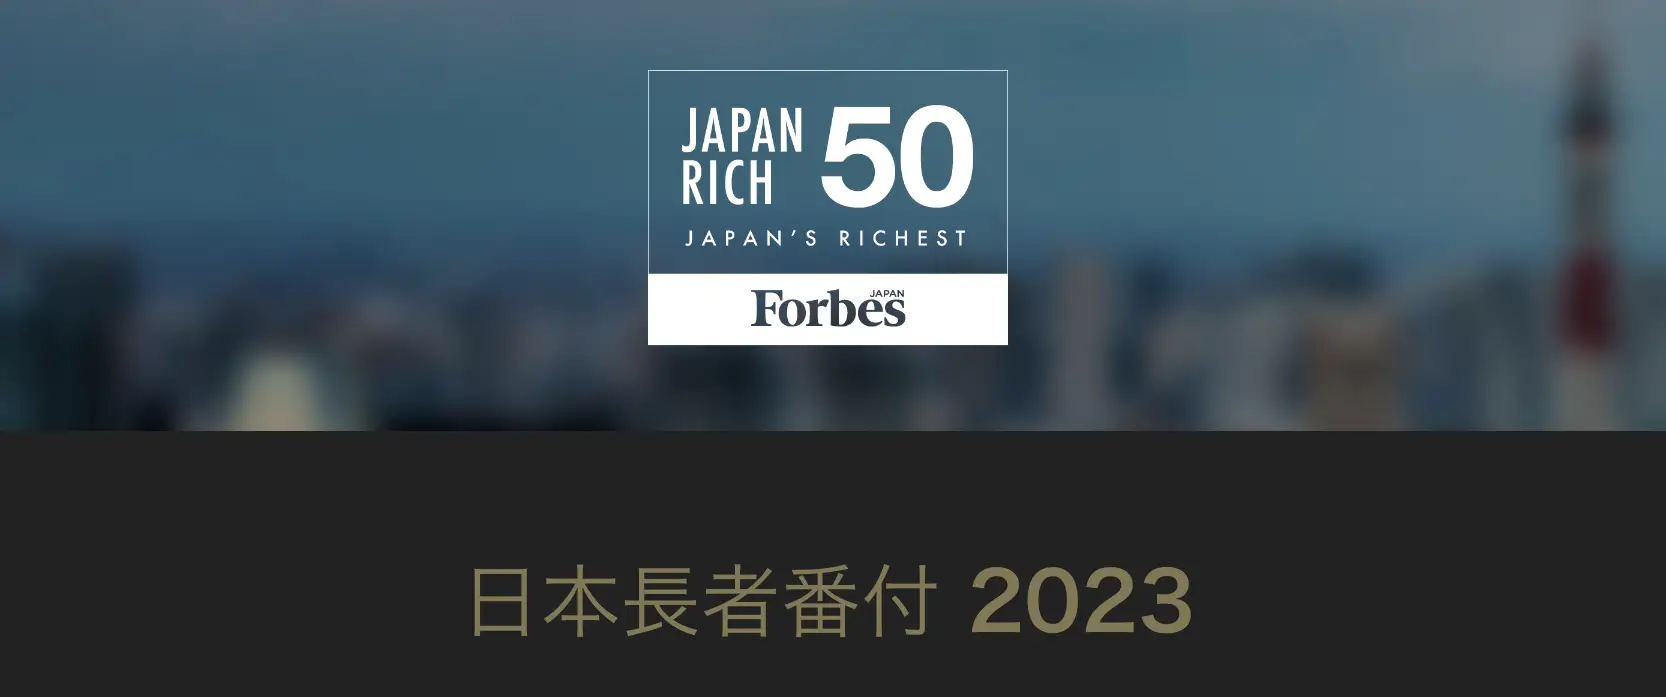 2023年フォーブス「日本長者番付」 上位50人の資産総額は前年比13%増の1920億ドルに